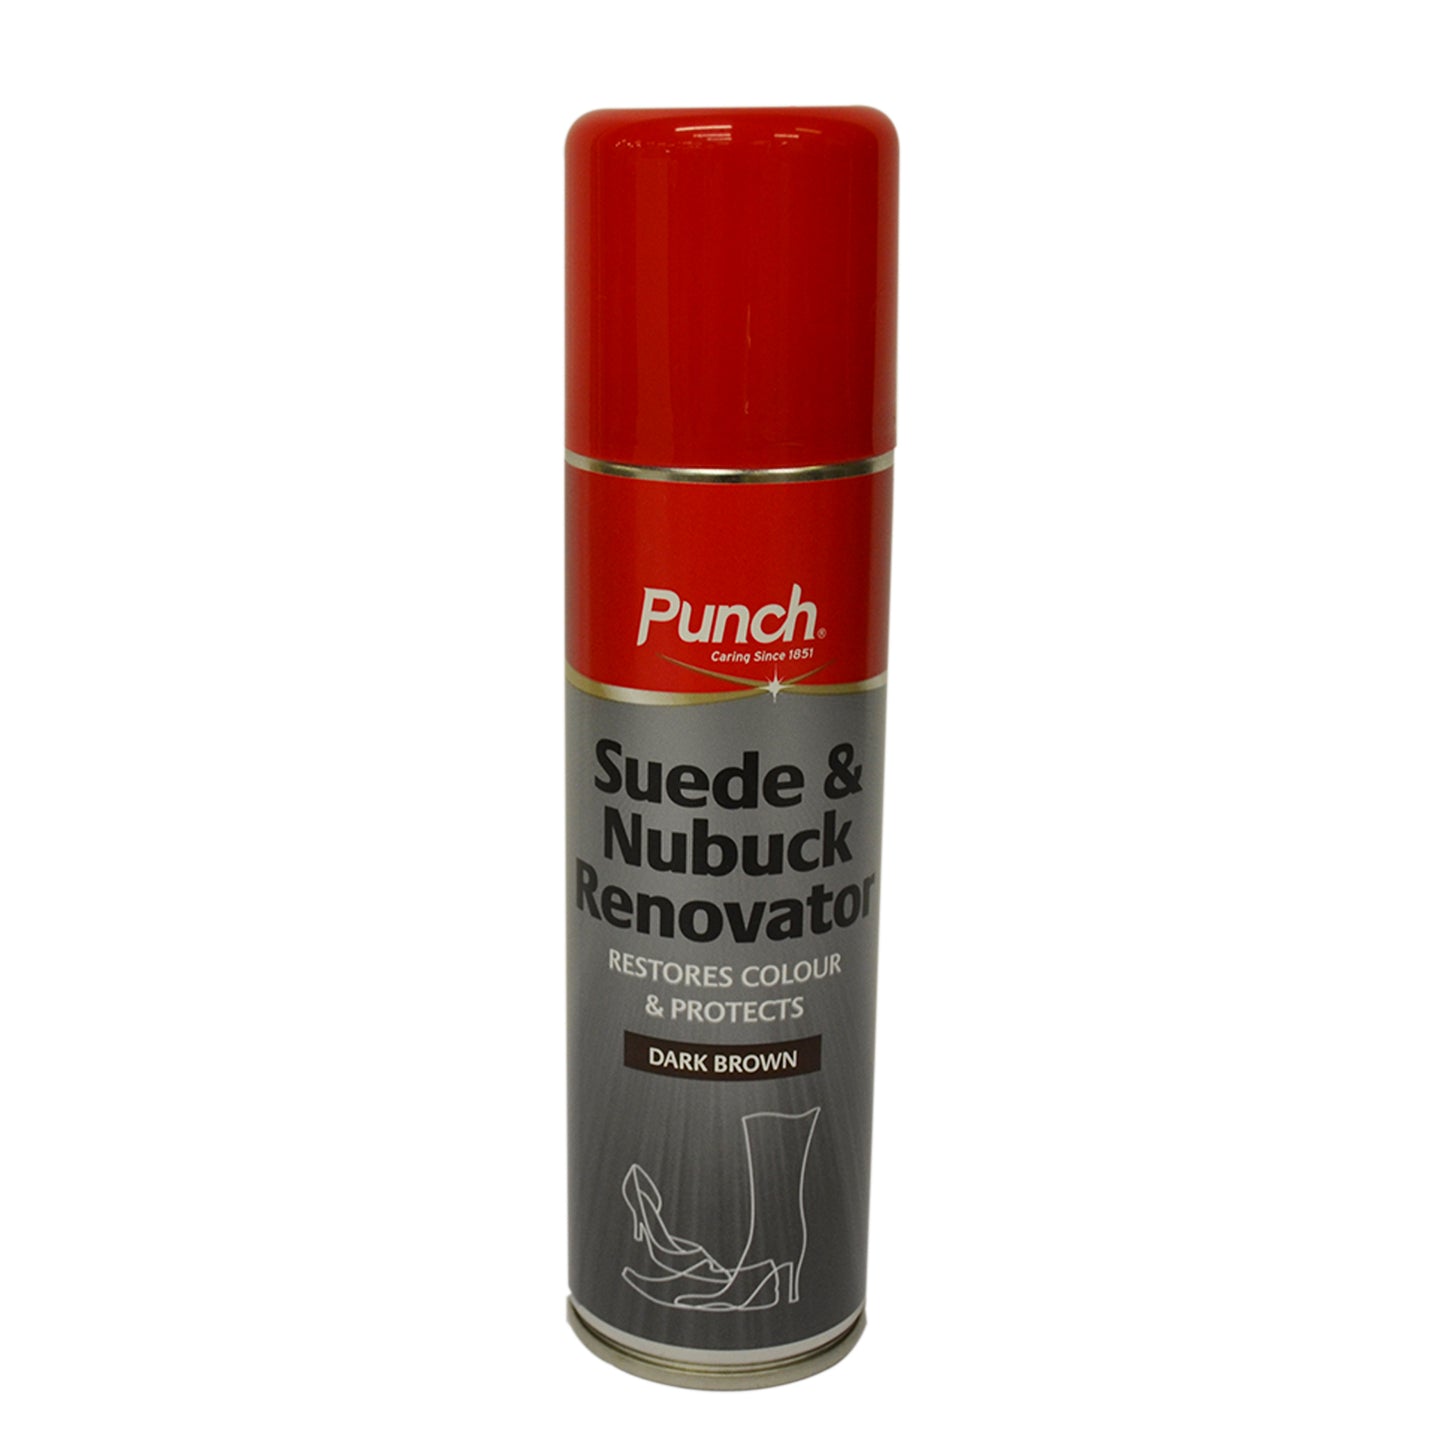 Punch Suede Renovator Spray 200ml - DARK BROWN